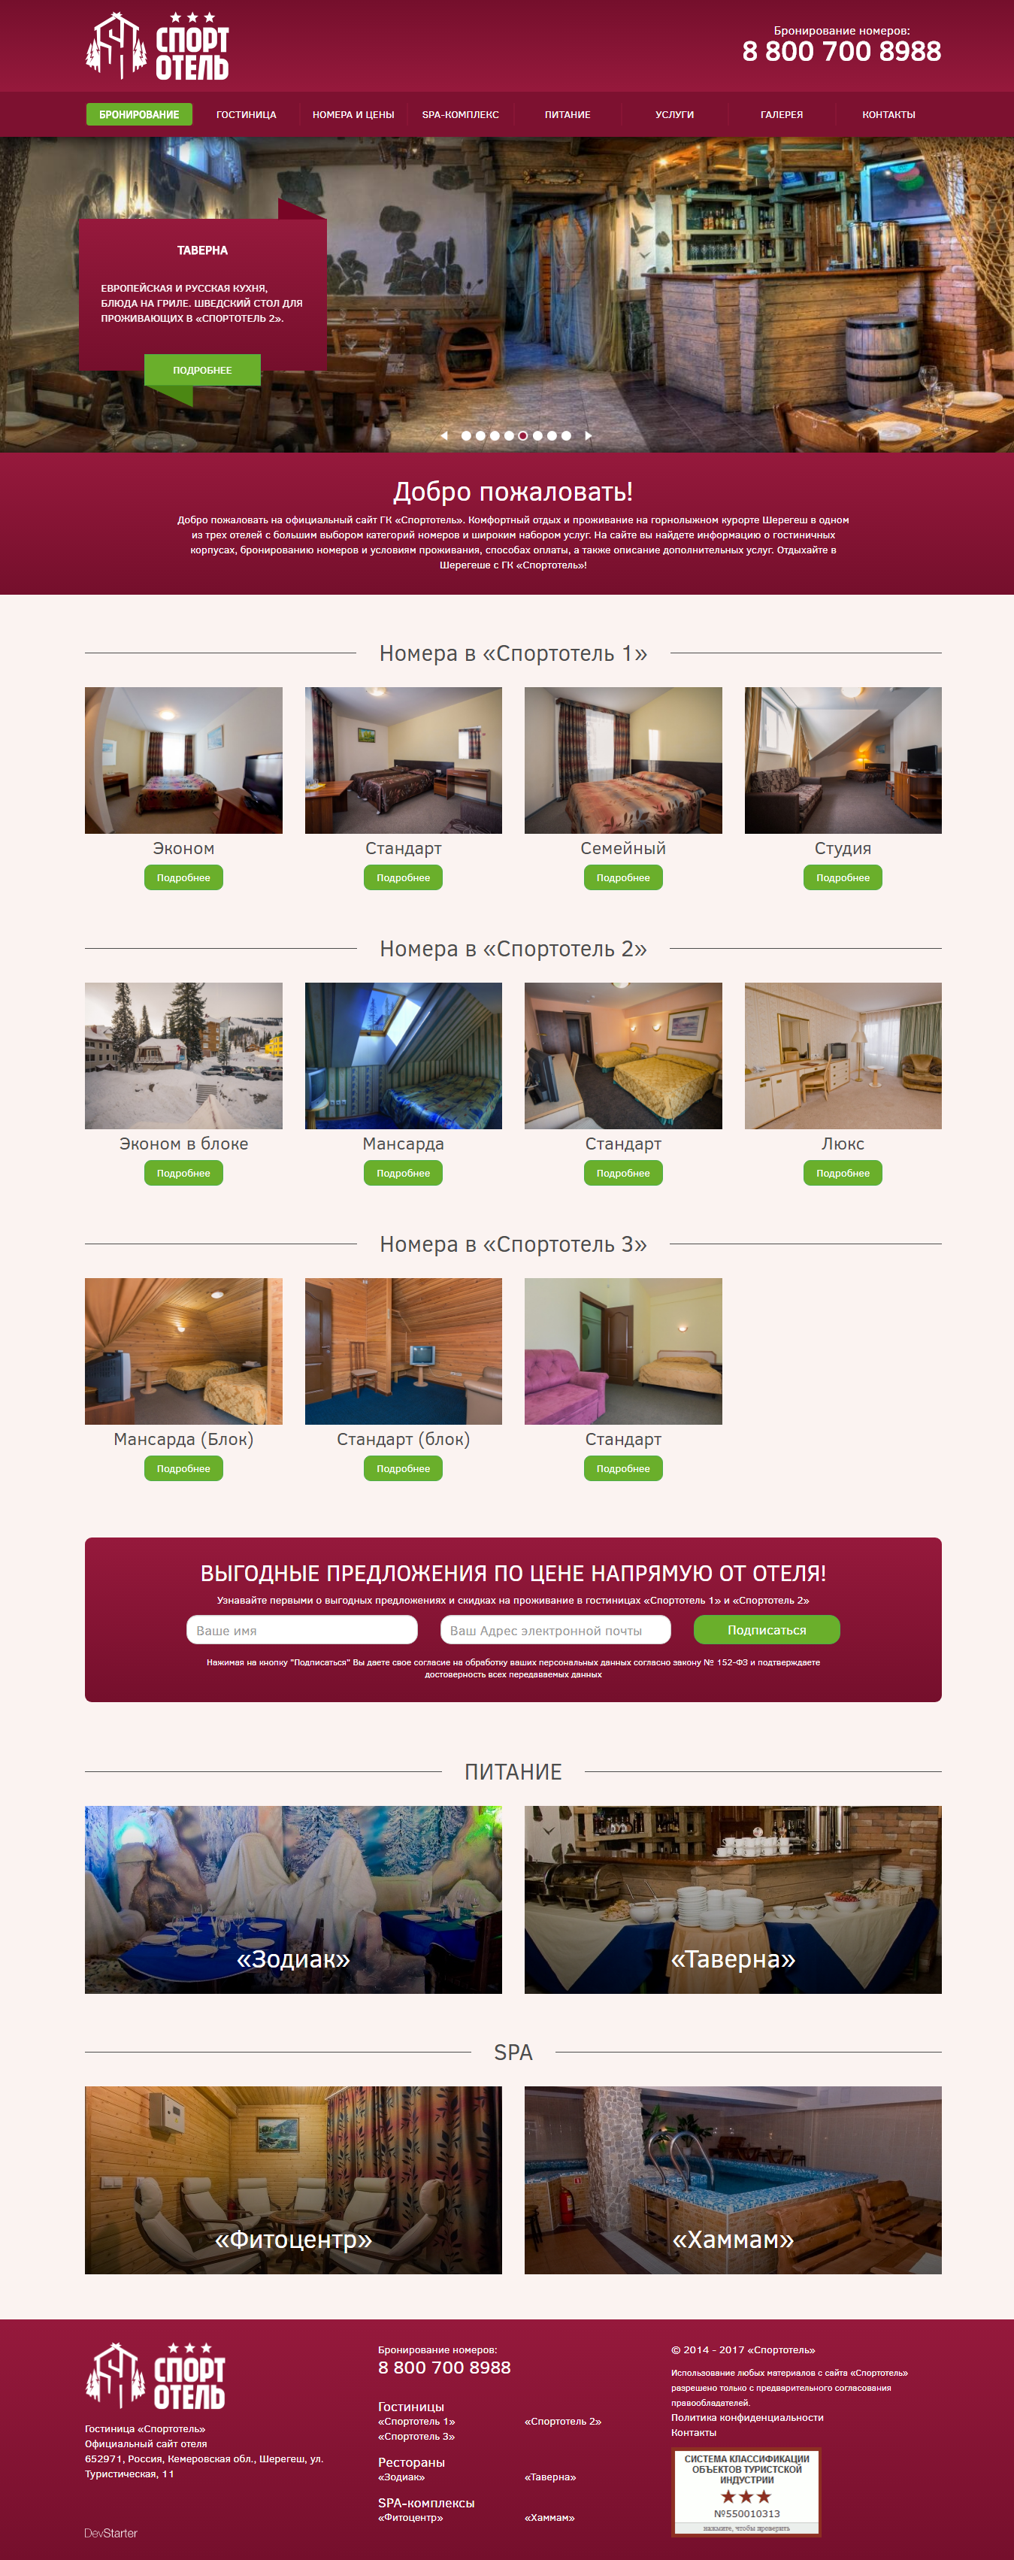 Новая главная страница сайта гостиницы Спортотель после редизайна